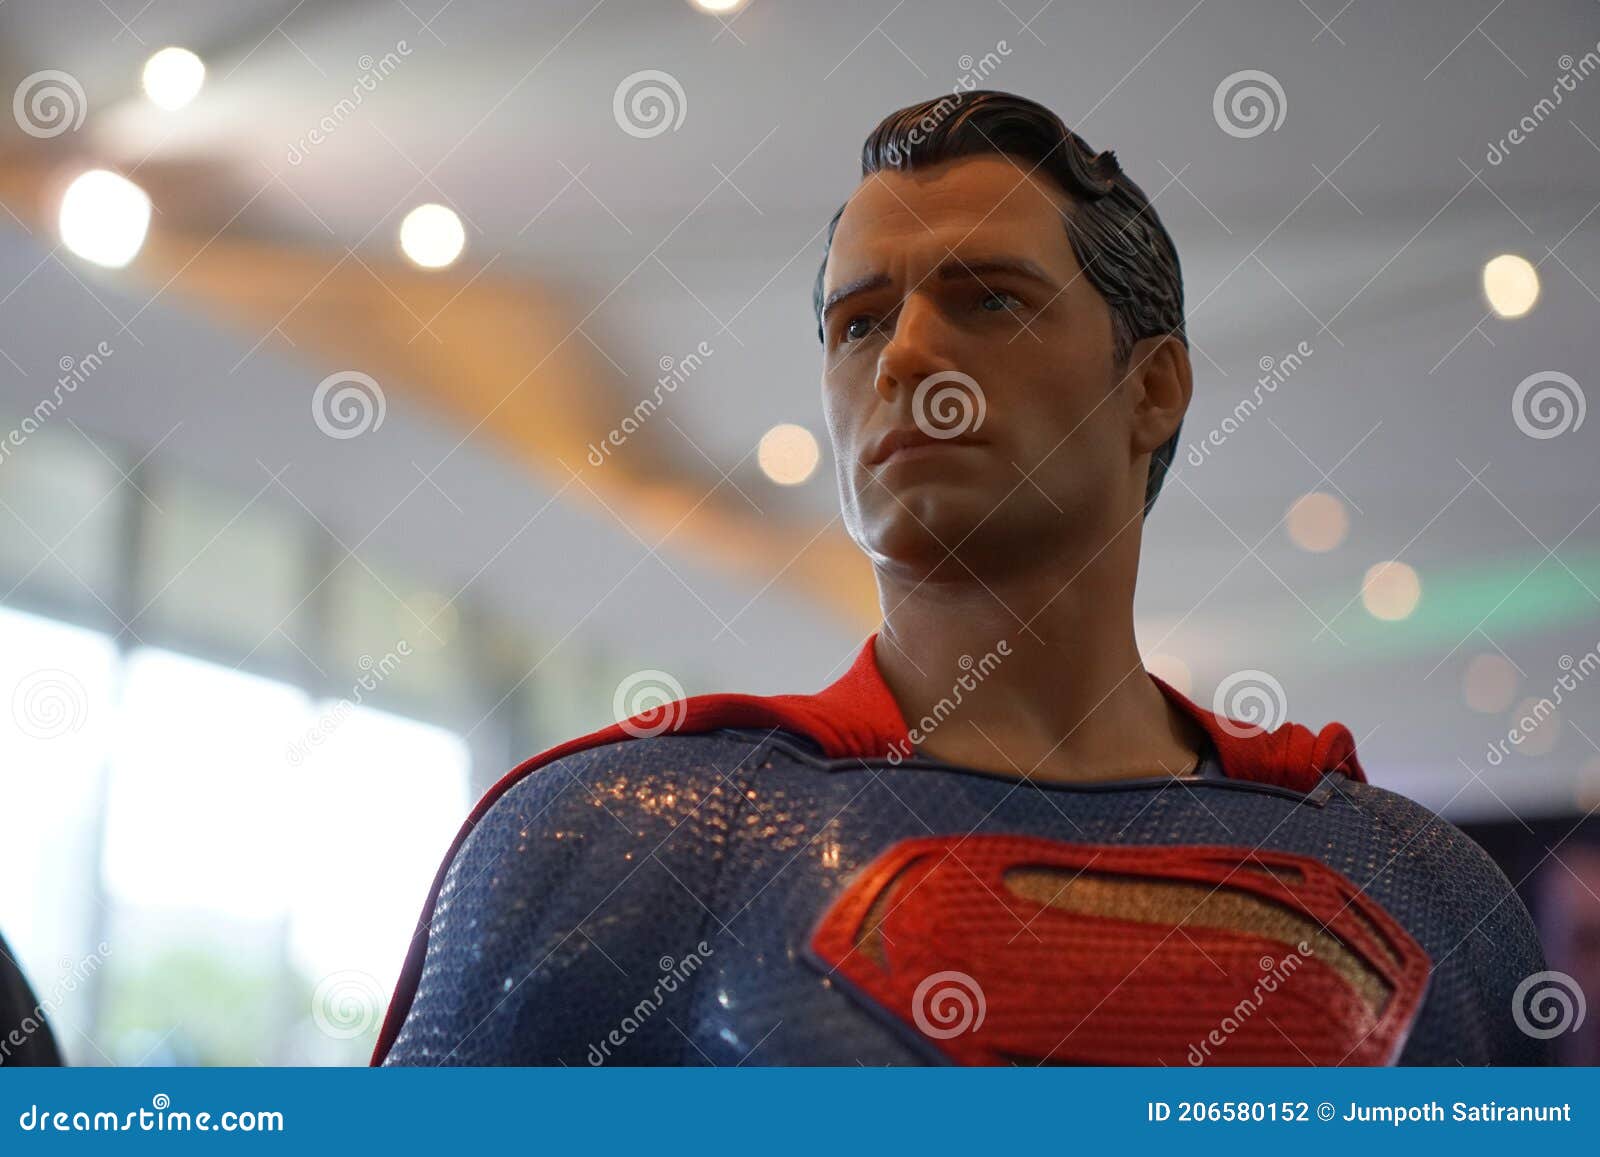 Figura Personagem De Super-herói Do Super-homem Dos Filmes Dc, Exibição  Realista De Brinquedos Do Ator Henry Cavill. Fotografia Editorial - Imagem  de cartoon, cômico: 206580152